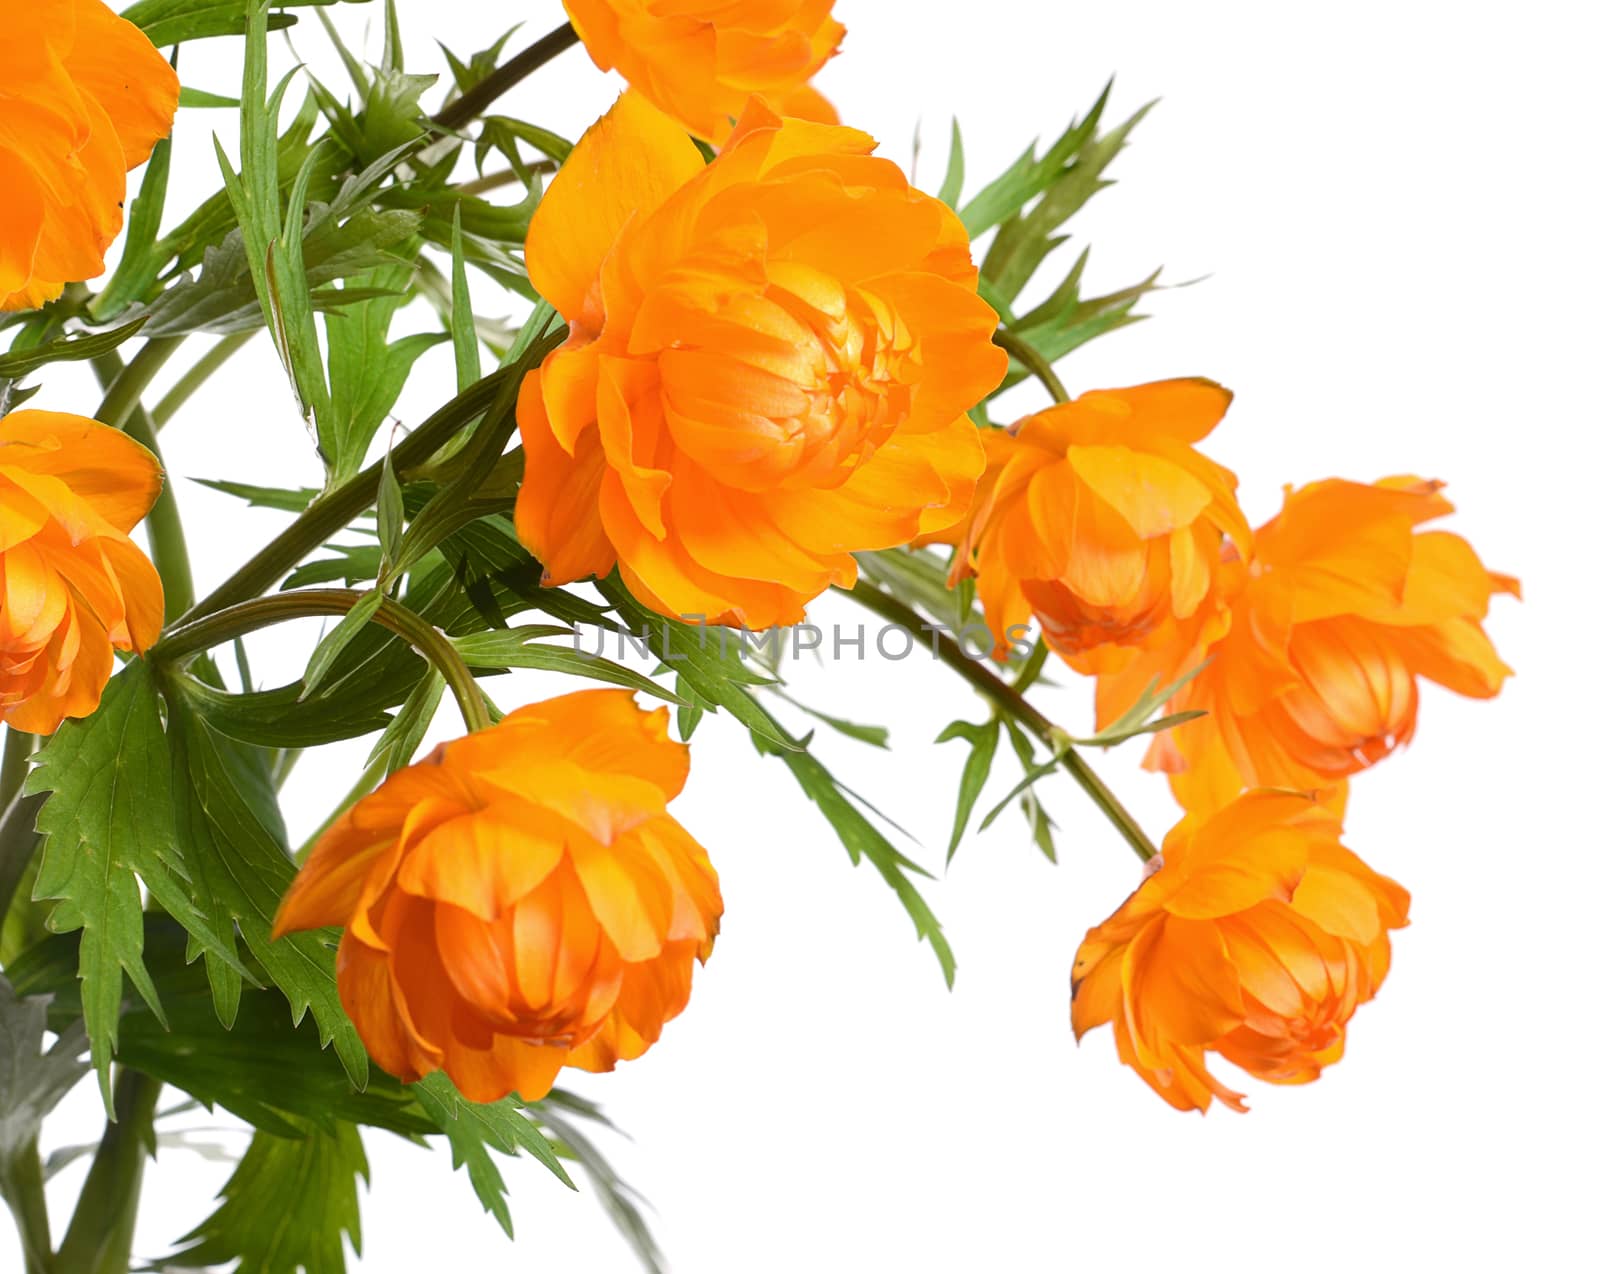 Beautiful orange flowers isolated on white background